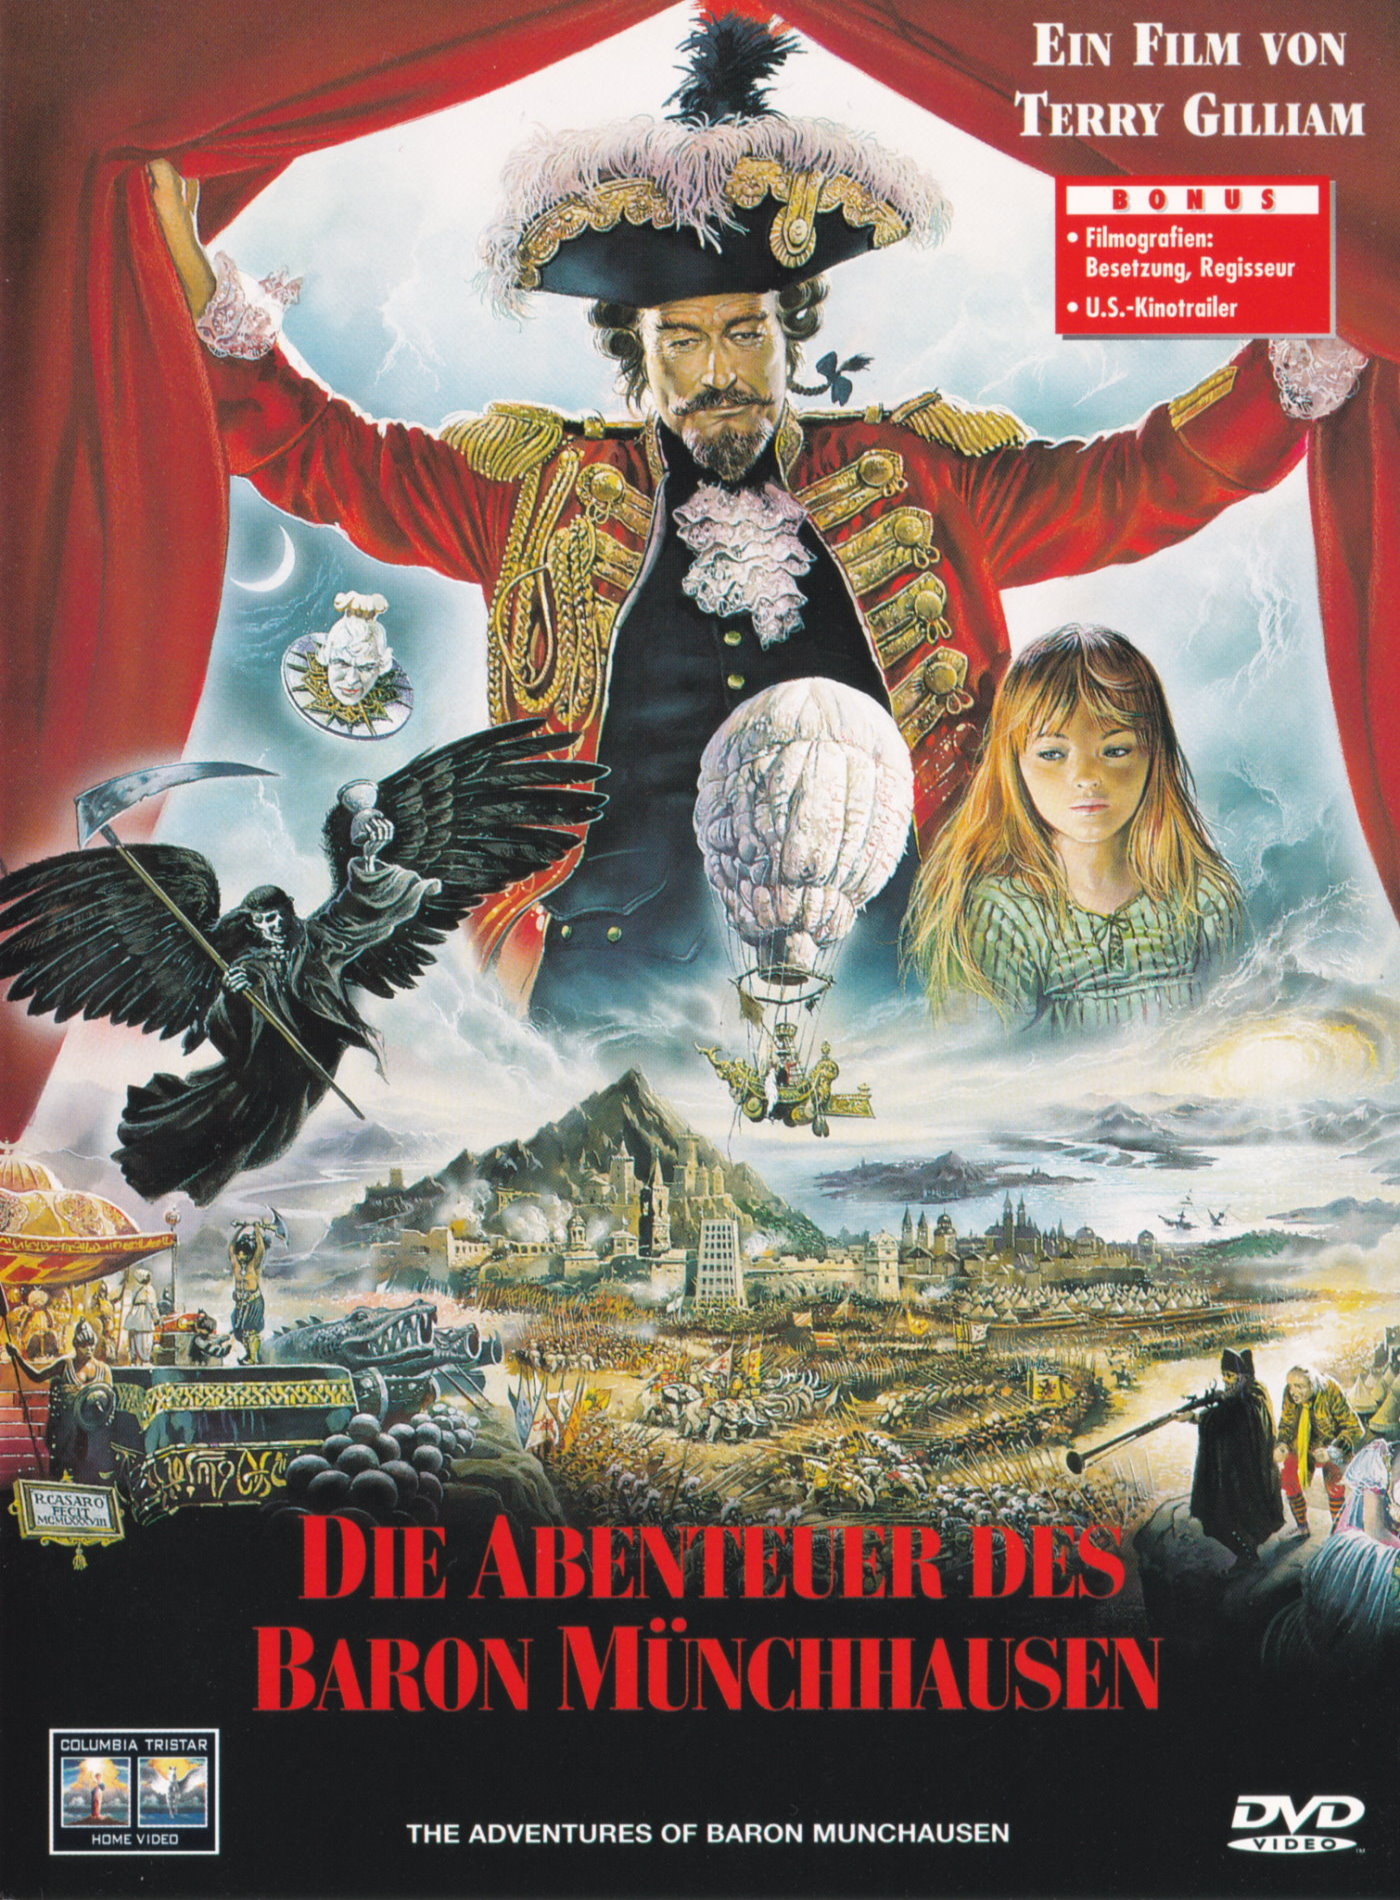 Cover - Die Abenteuer des Baron Münchhausen.jpg